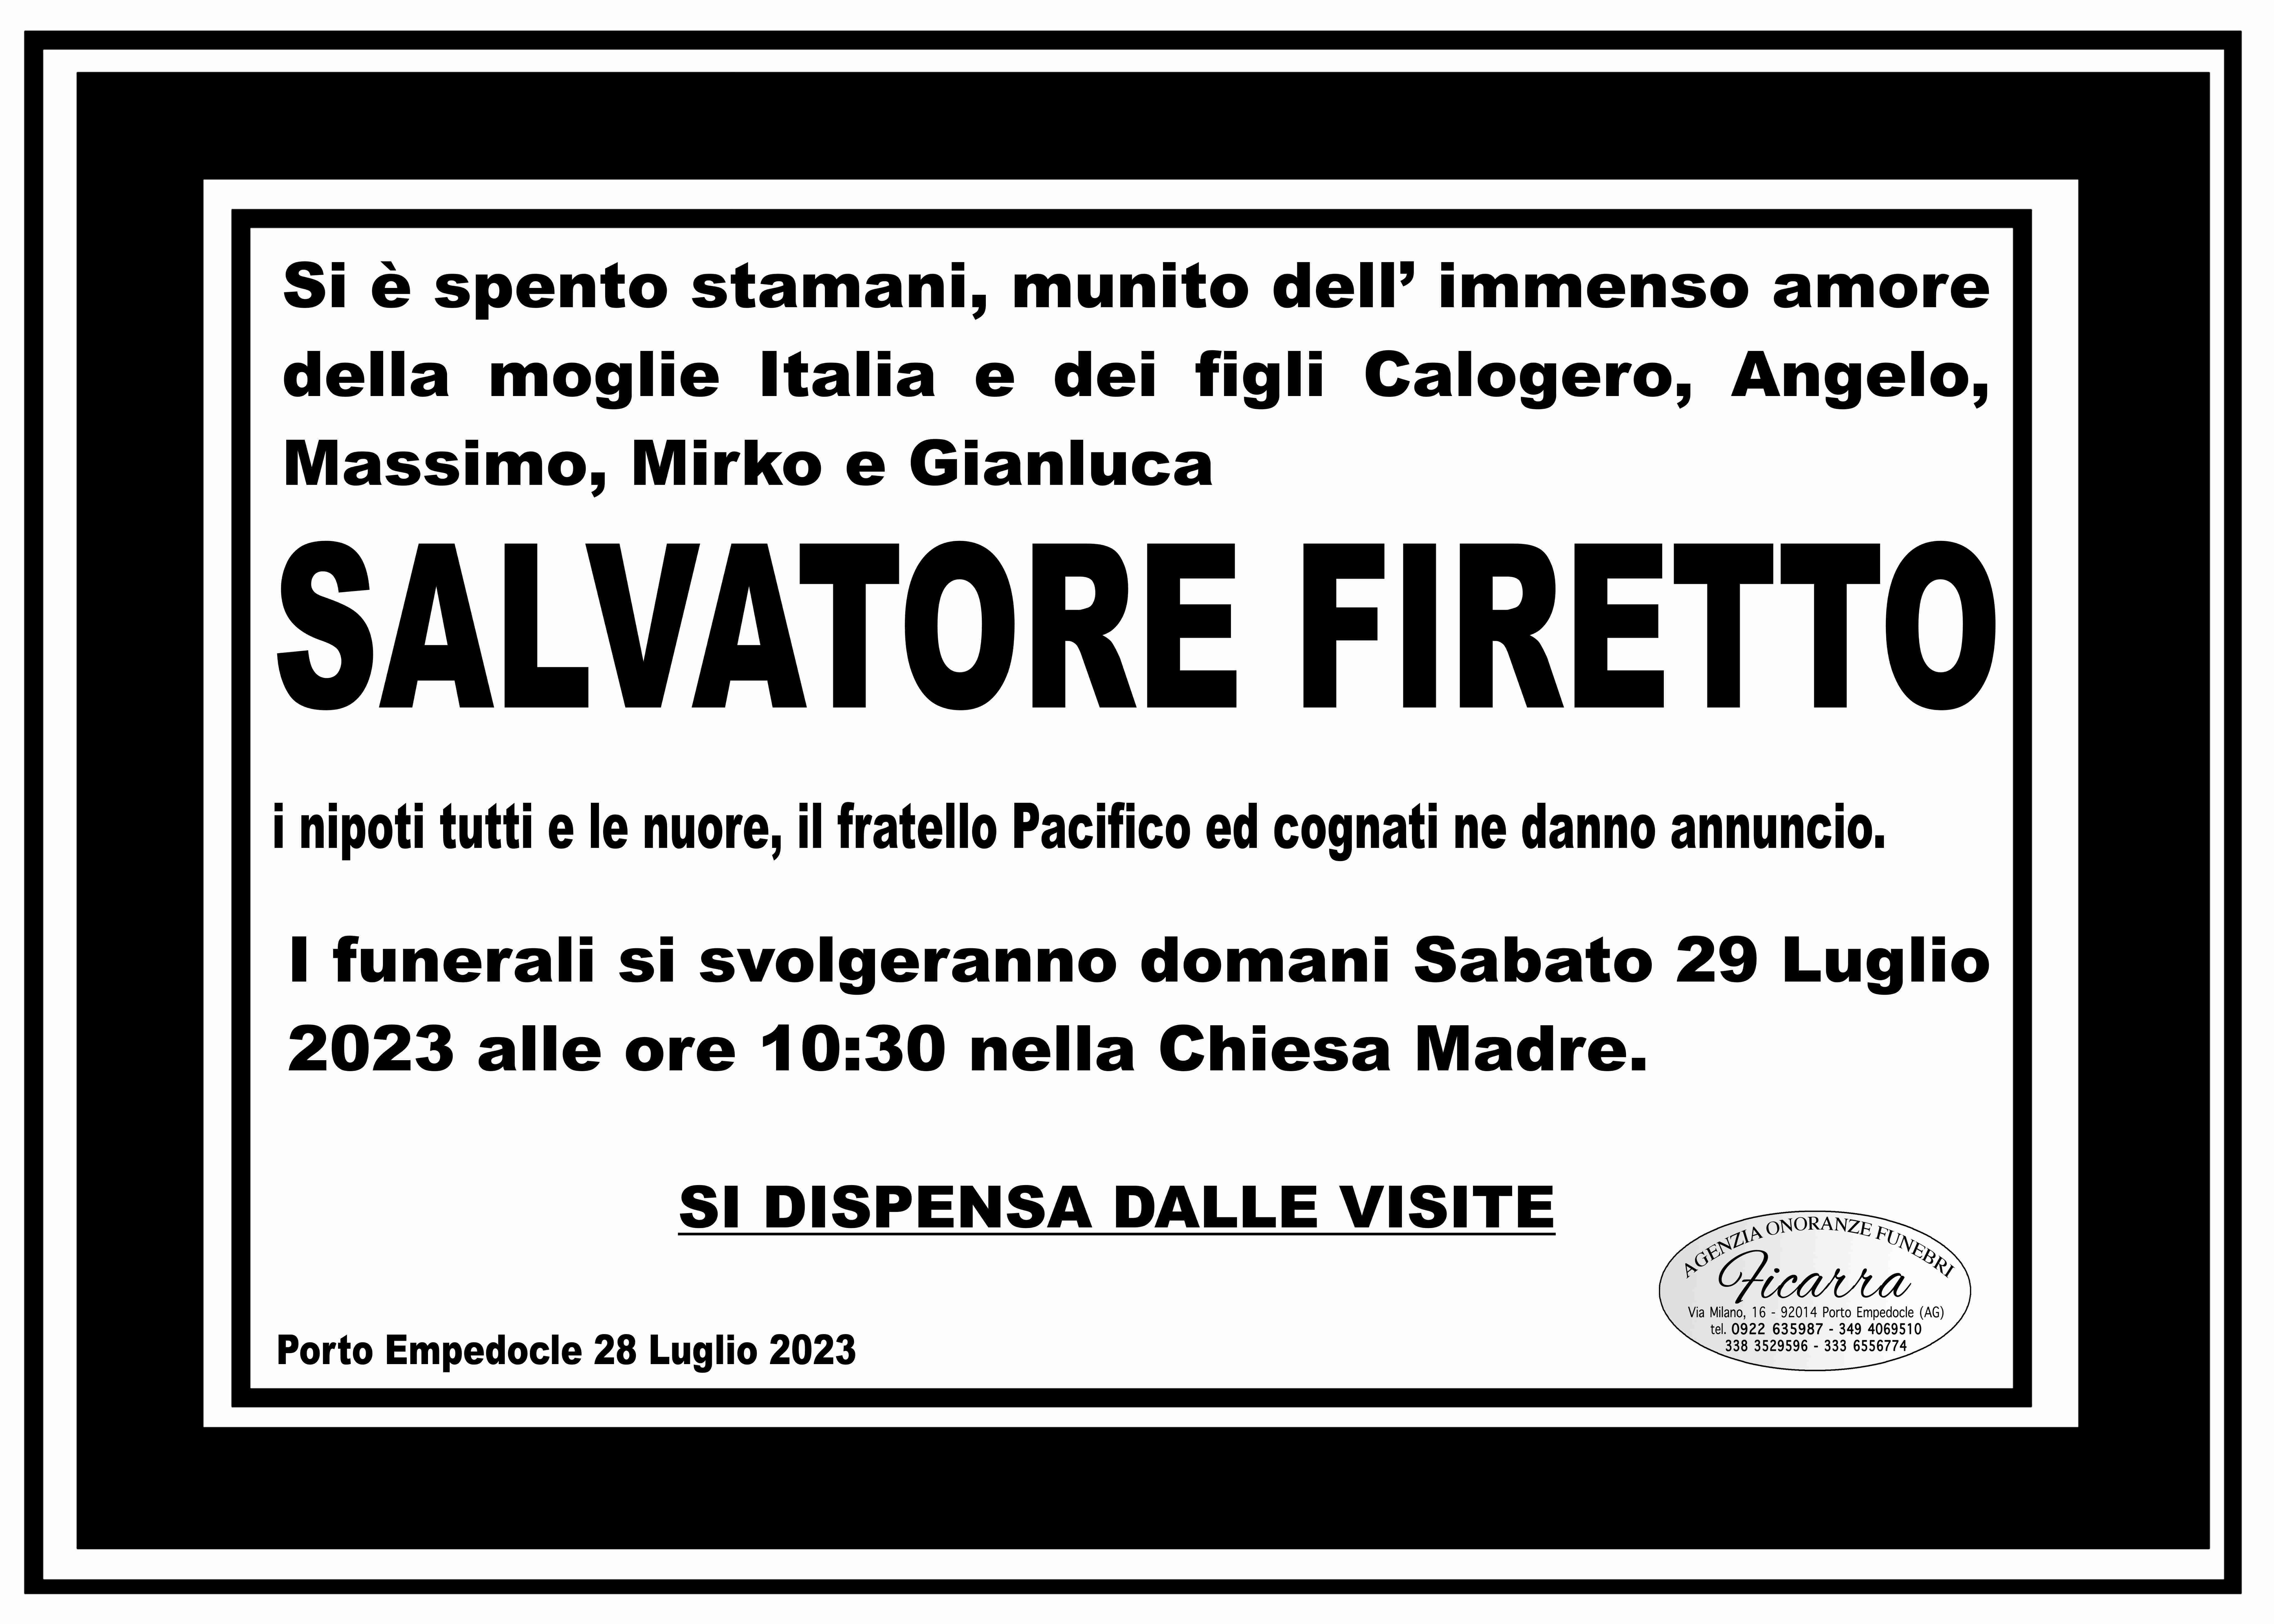 Salvatore Firetto